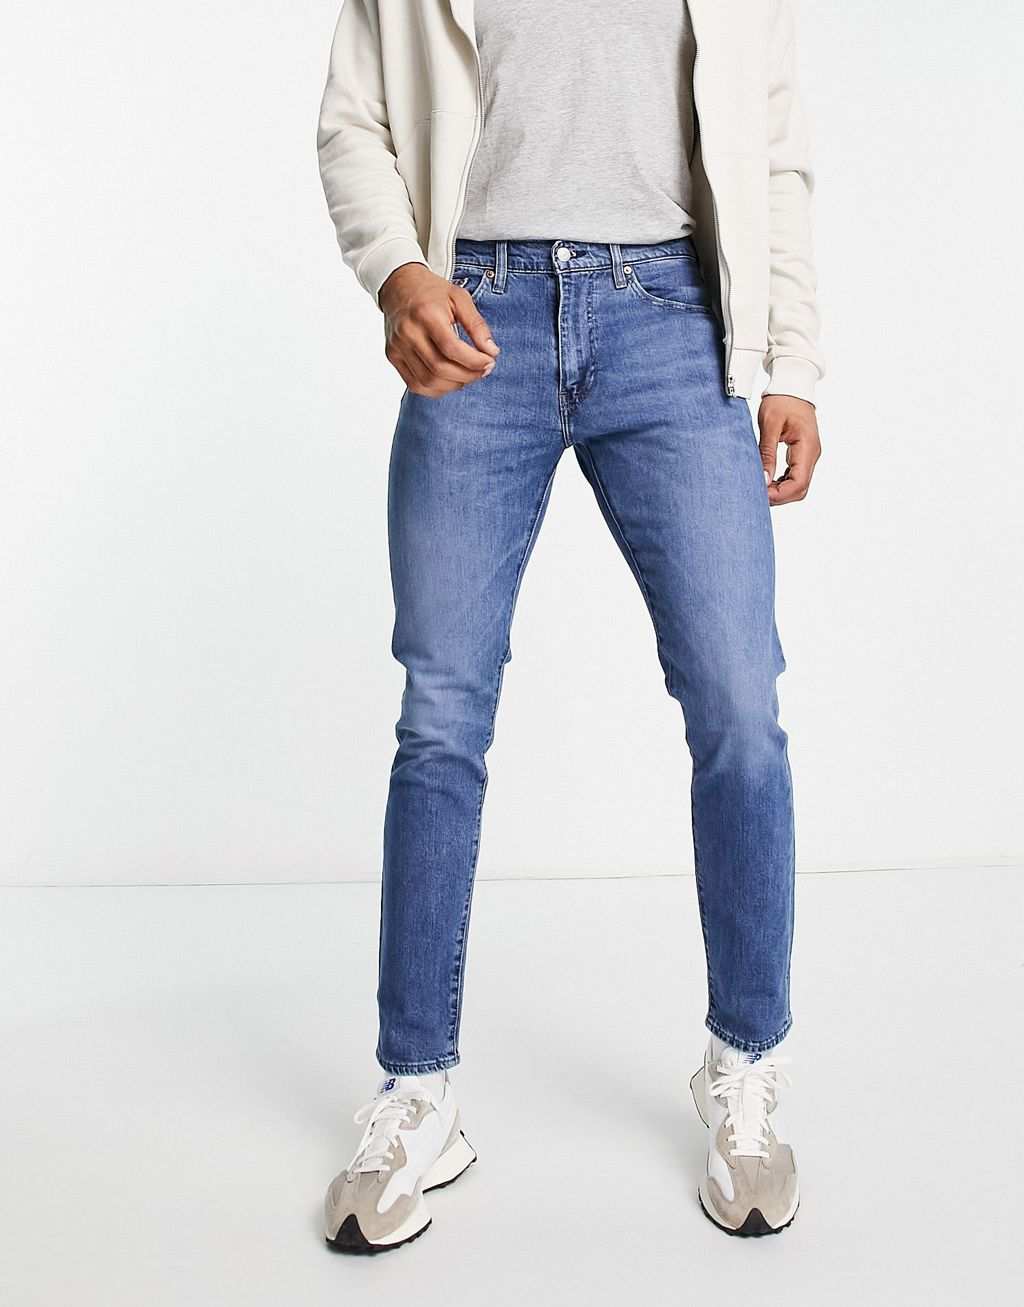 Узкие зауженные джинсы Levi's 512 средней степени стирки